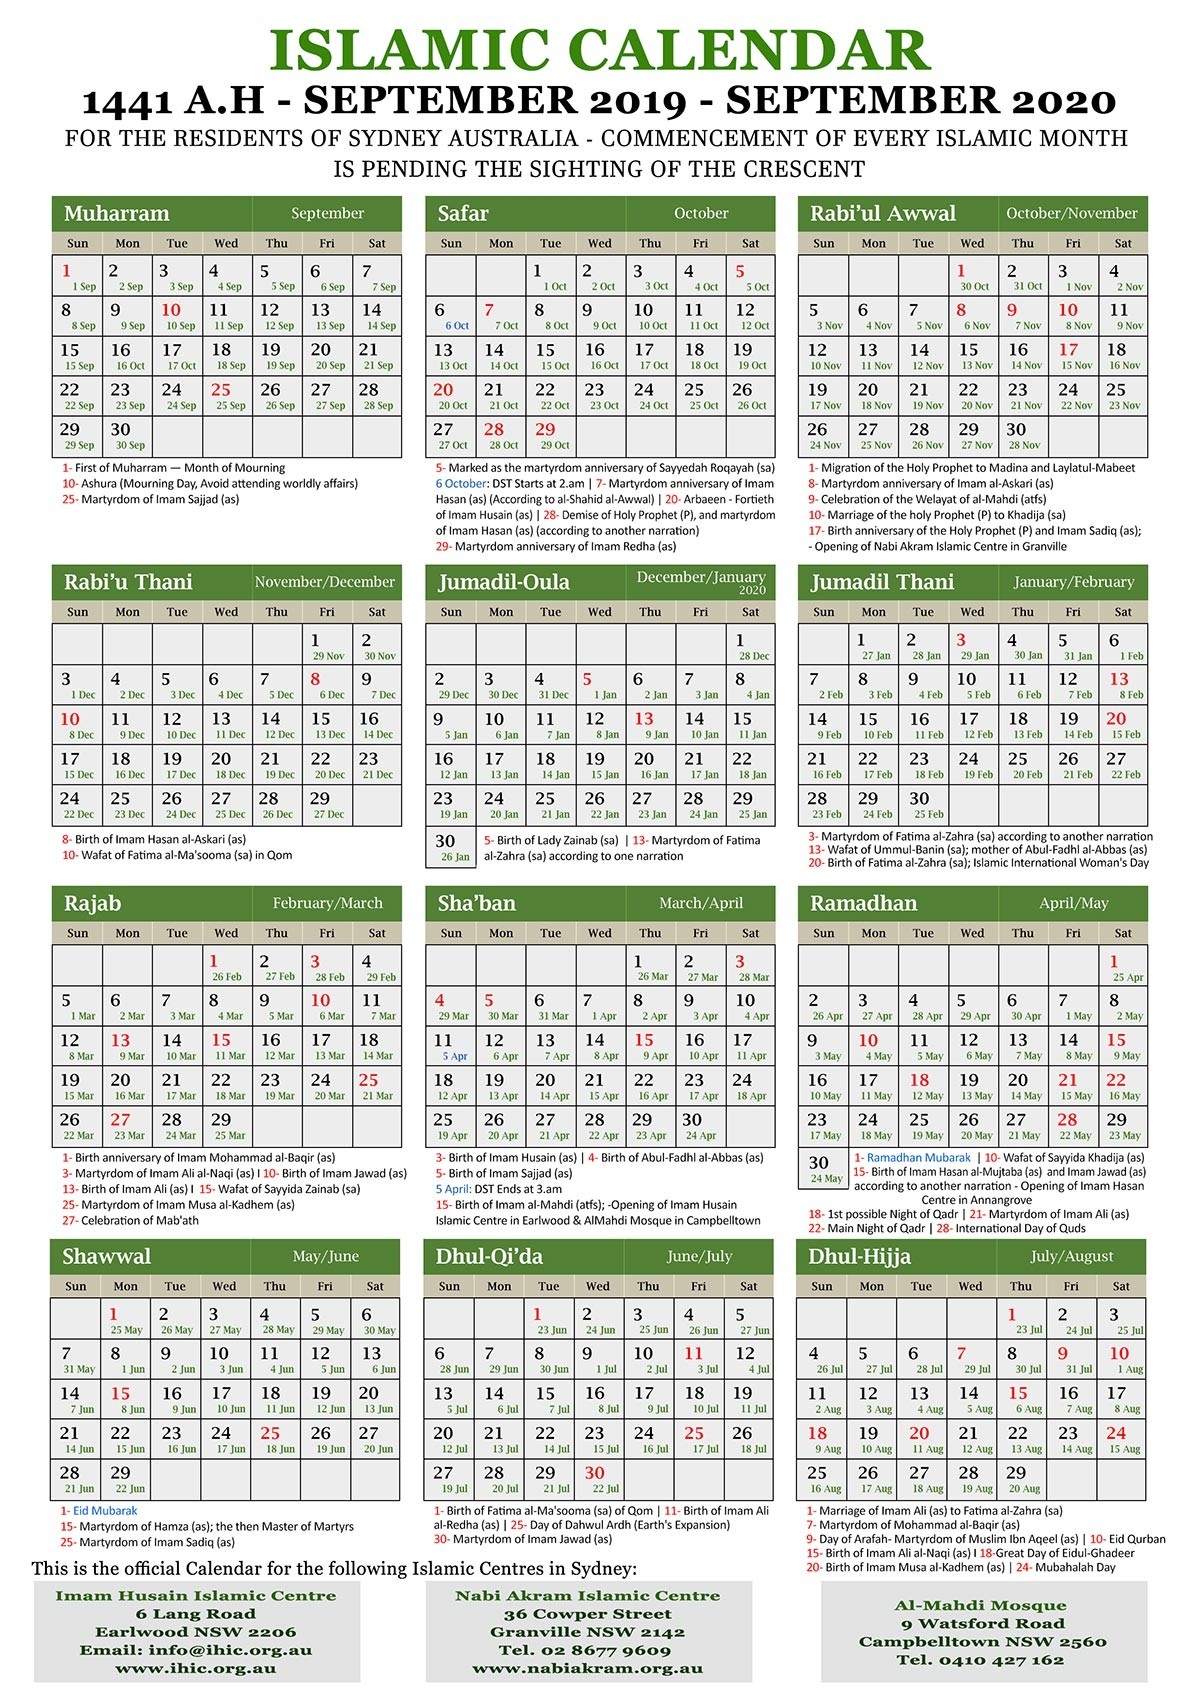 Islamic Calendar 2020-January 2020 Calendar Urdu